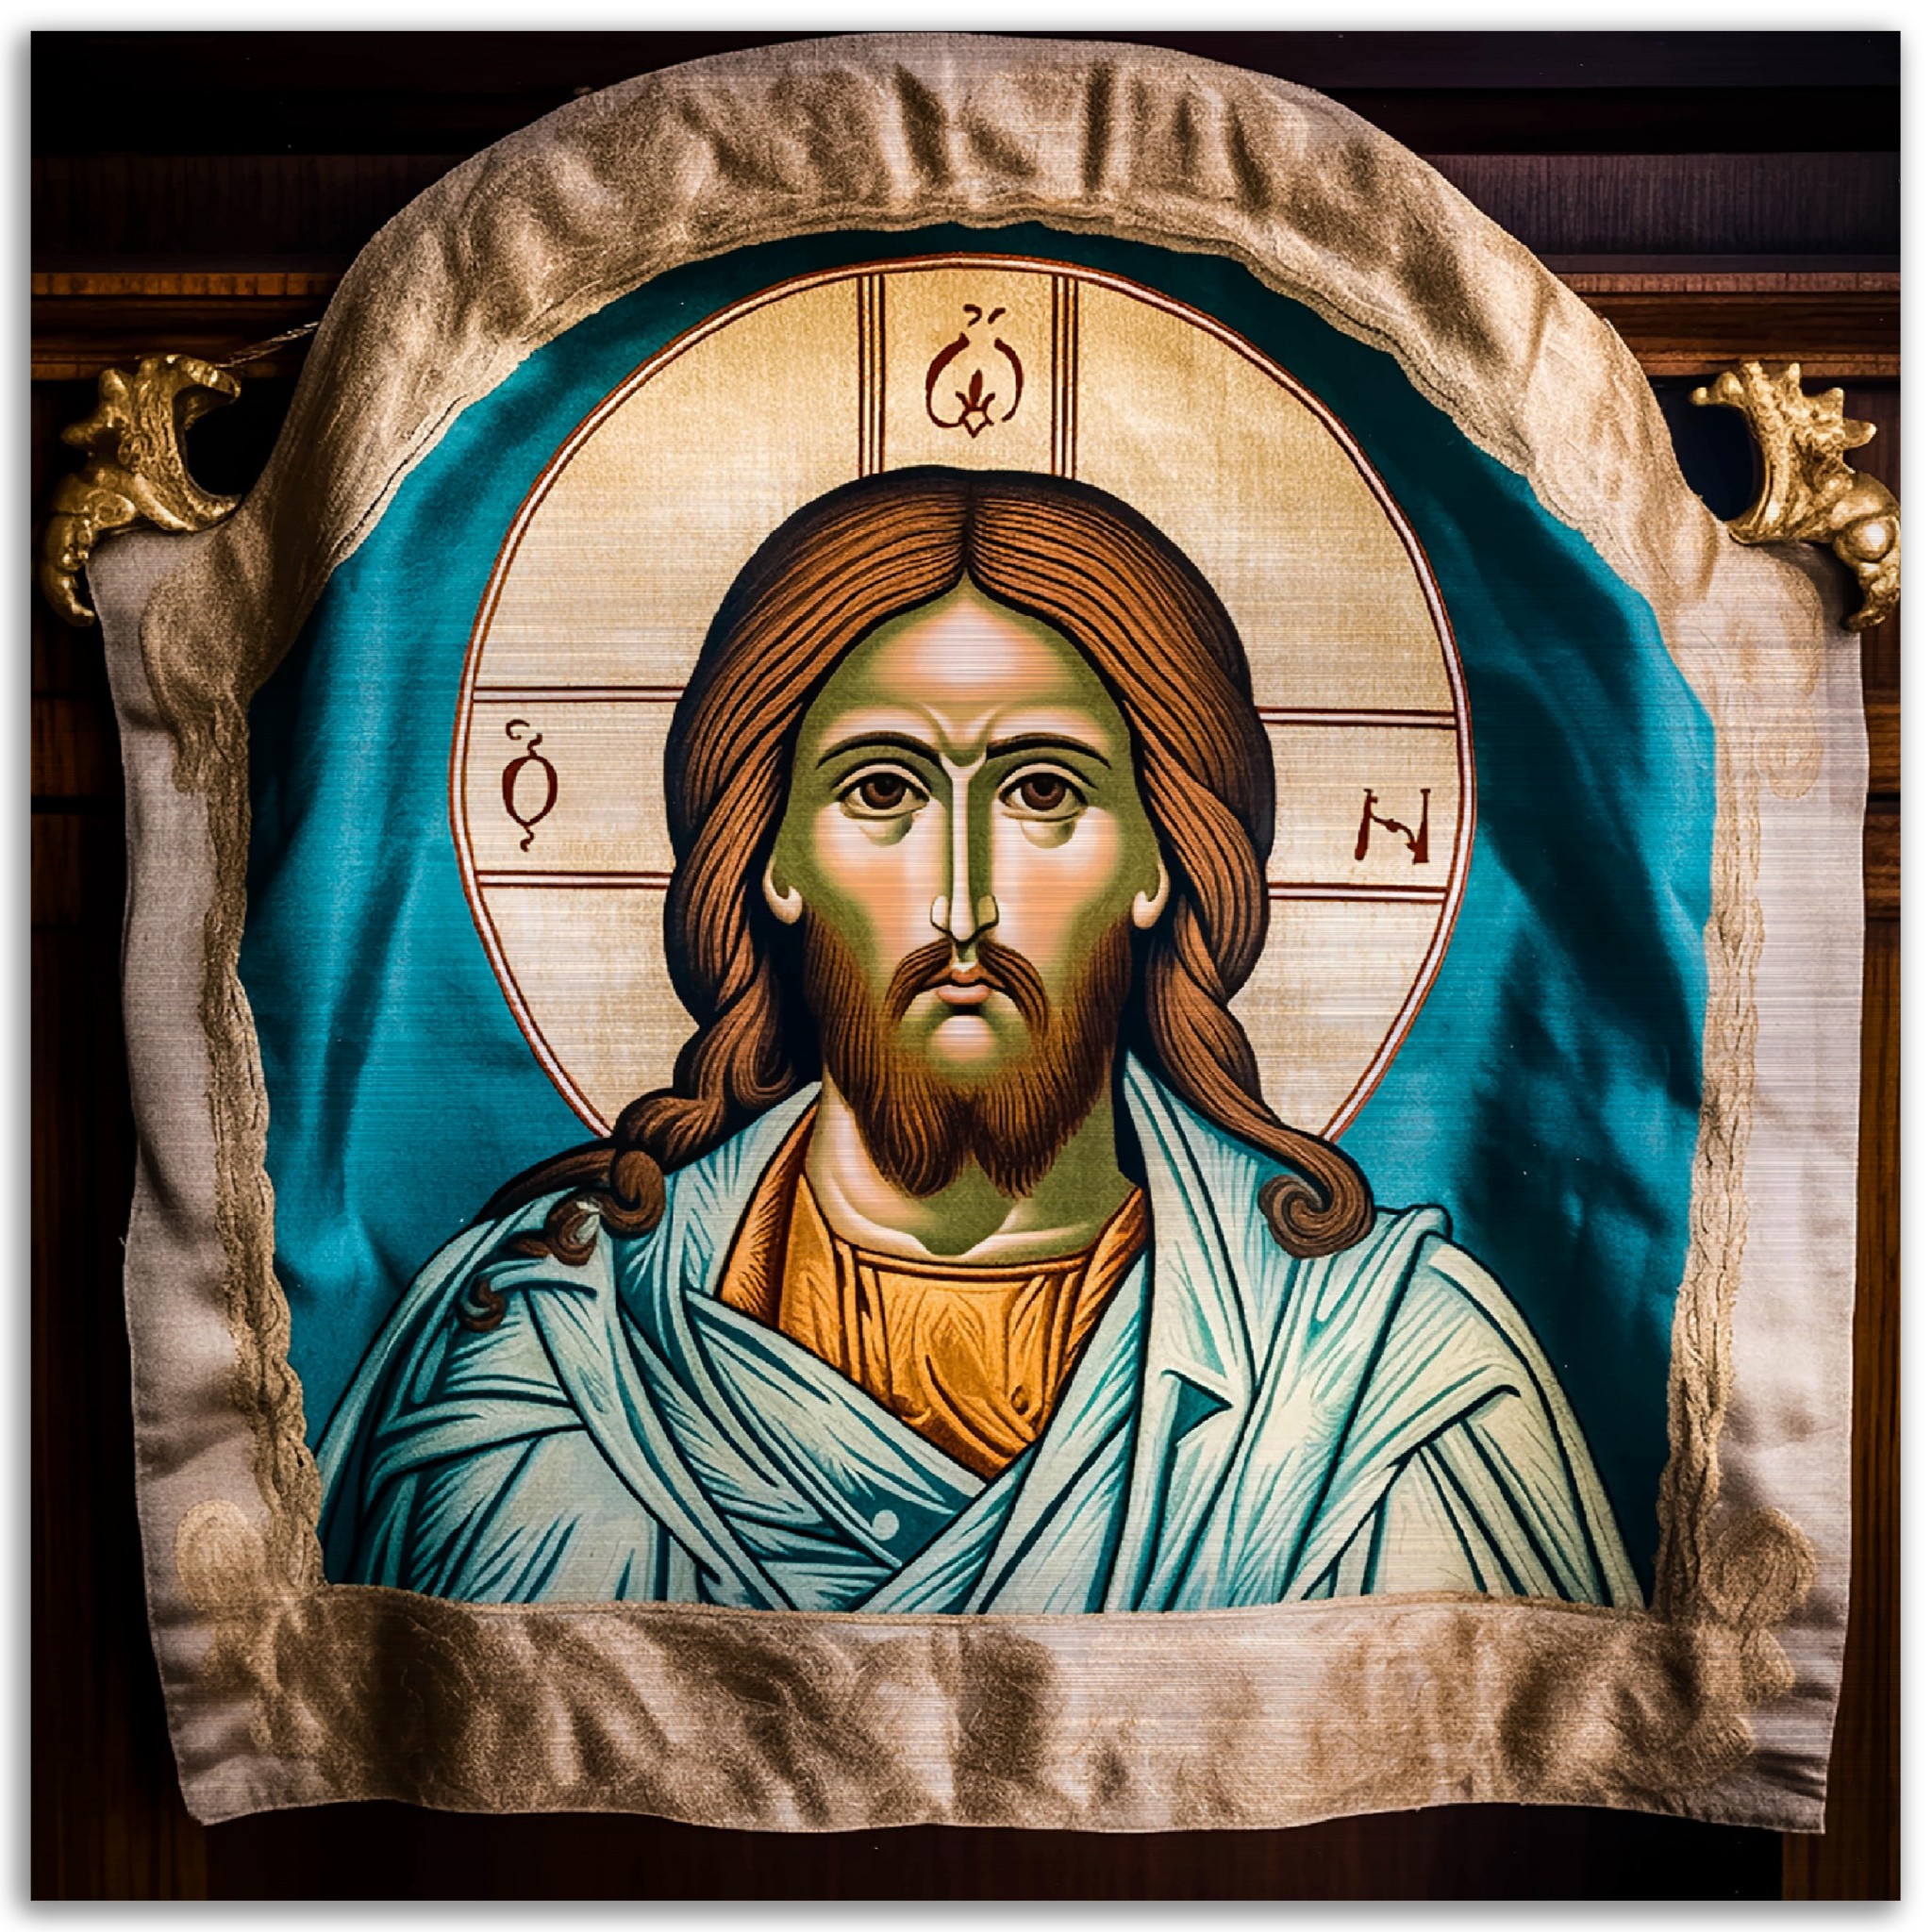 Mandylion Holy Face, Holy Napkin of Edessa Brushed Aluminum Icon Brushed Aluminum Icons Rosary.Team